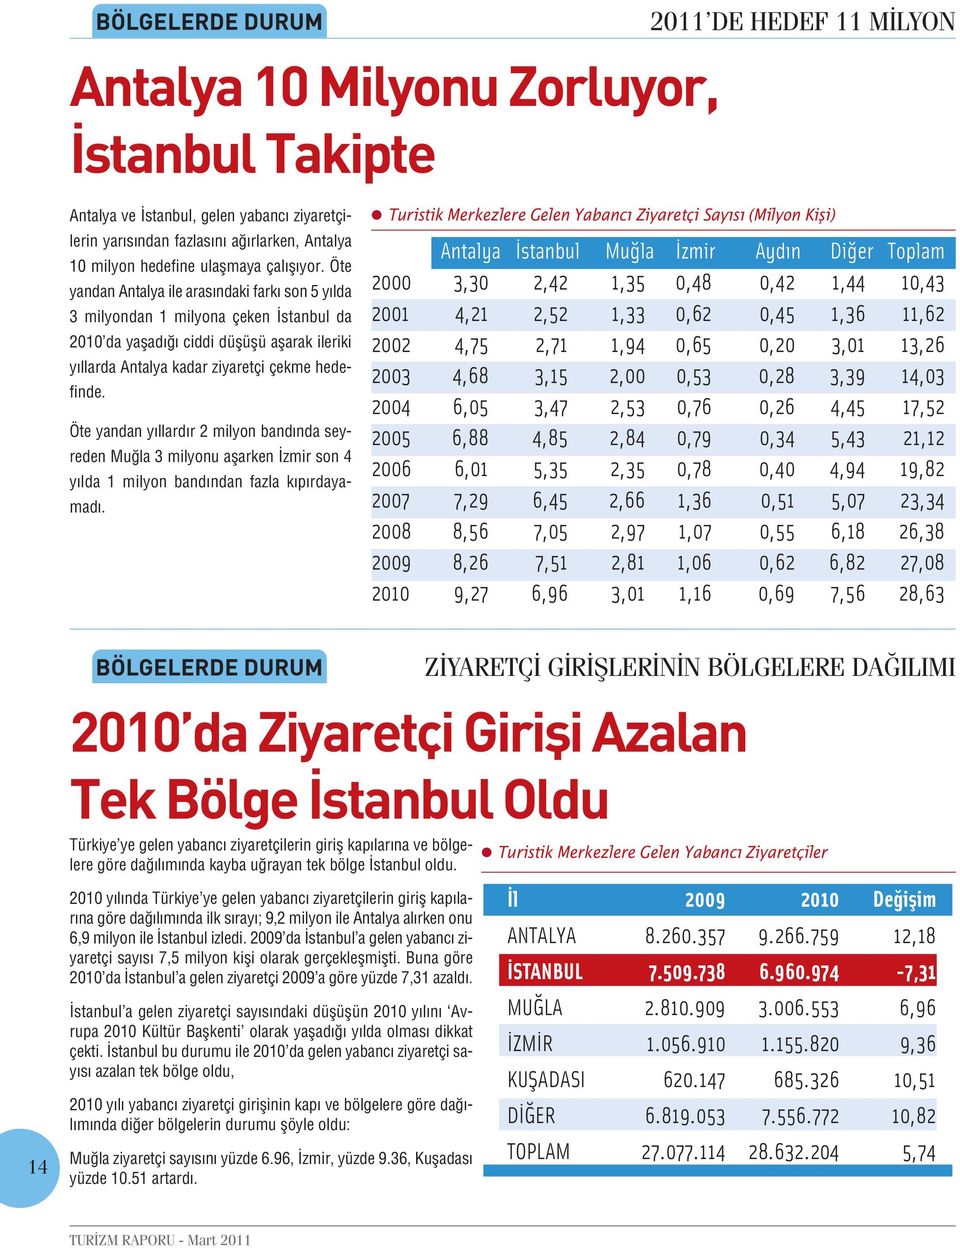 Öte yandan Antalya ile arasındaki farkı son 5 yılda 3 milyondan 1 milyona çeken İstanbul da 2010 da yaşadığı ciddi düşüşü aşarak ileriki yıllarda Antalya kadar ziyaretçi çekme hedefinde.